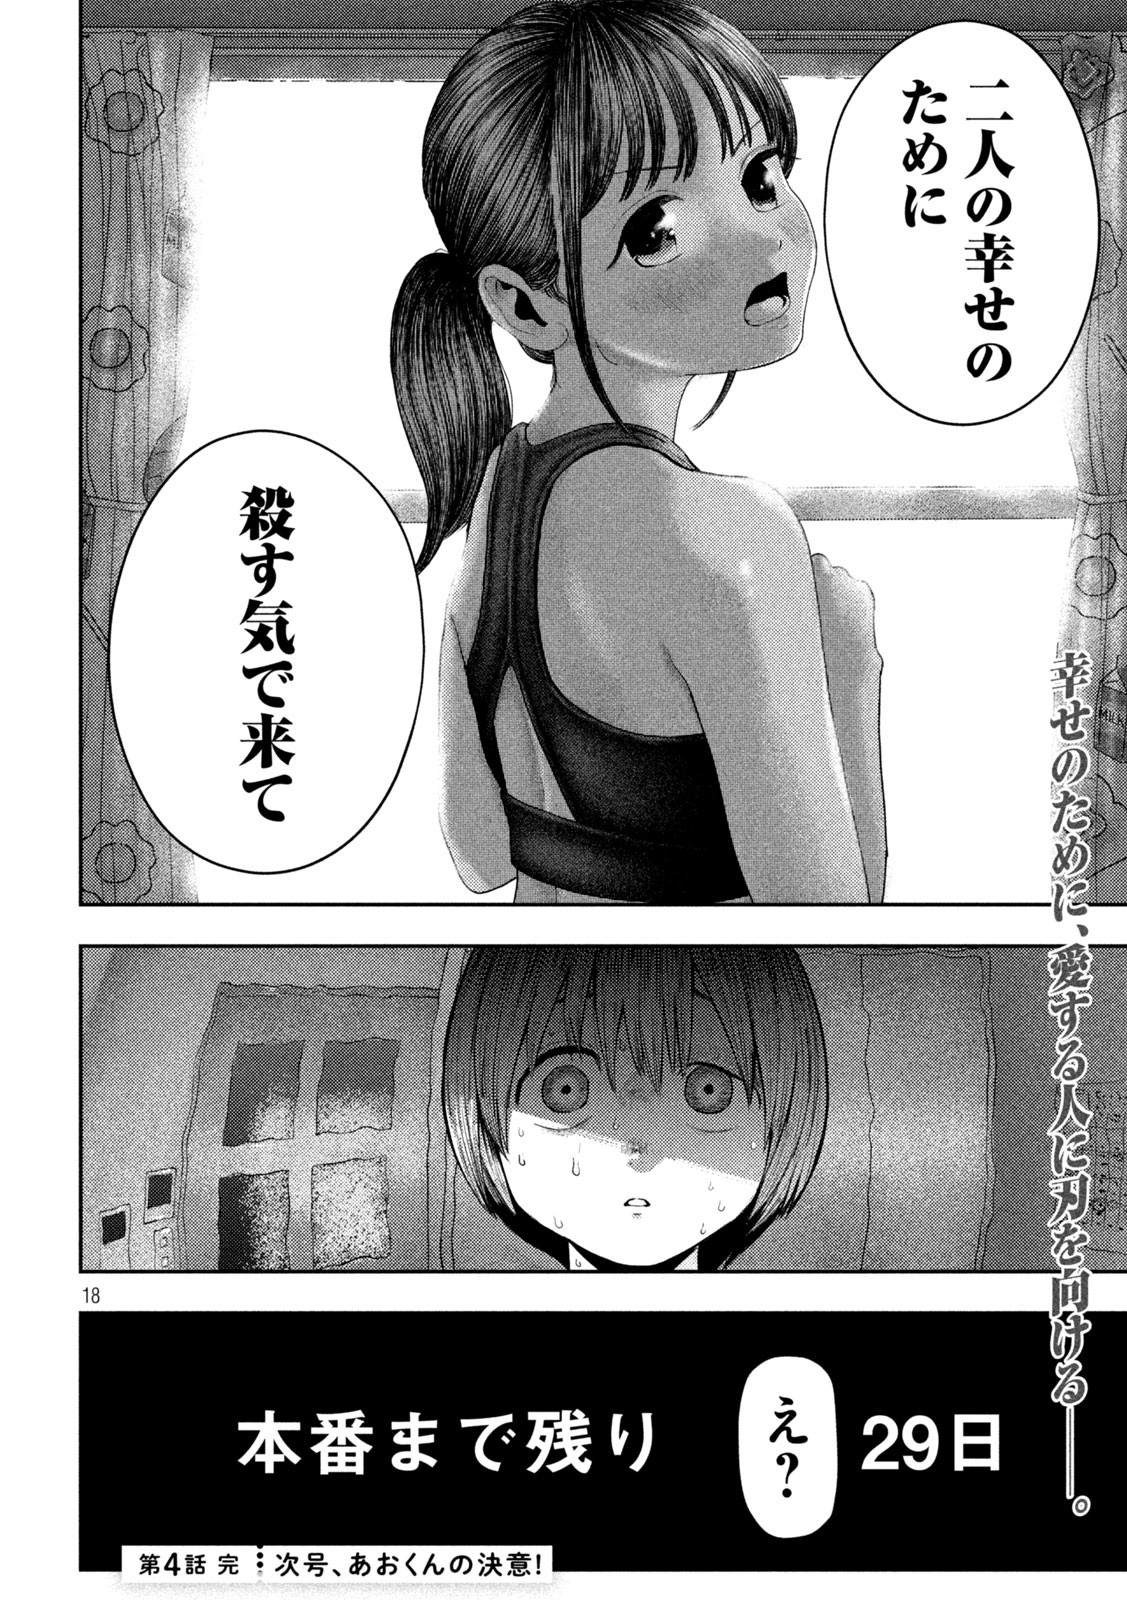 Nezumi no Koi - Chapter 4 - Page 18